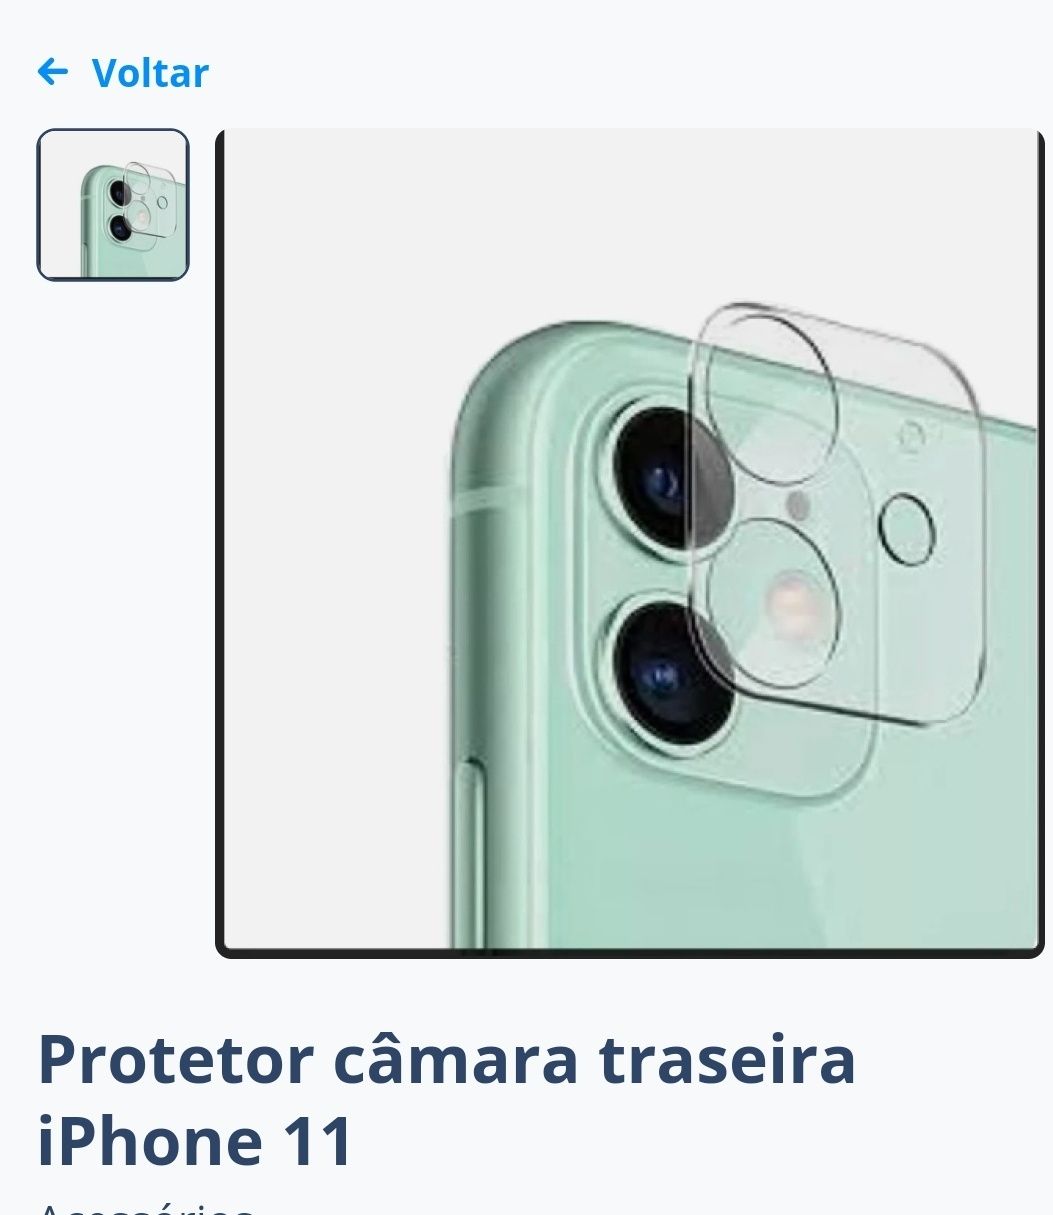 Protetor câmara traseira iPhone 11